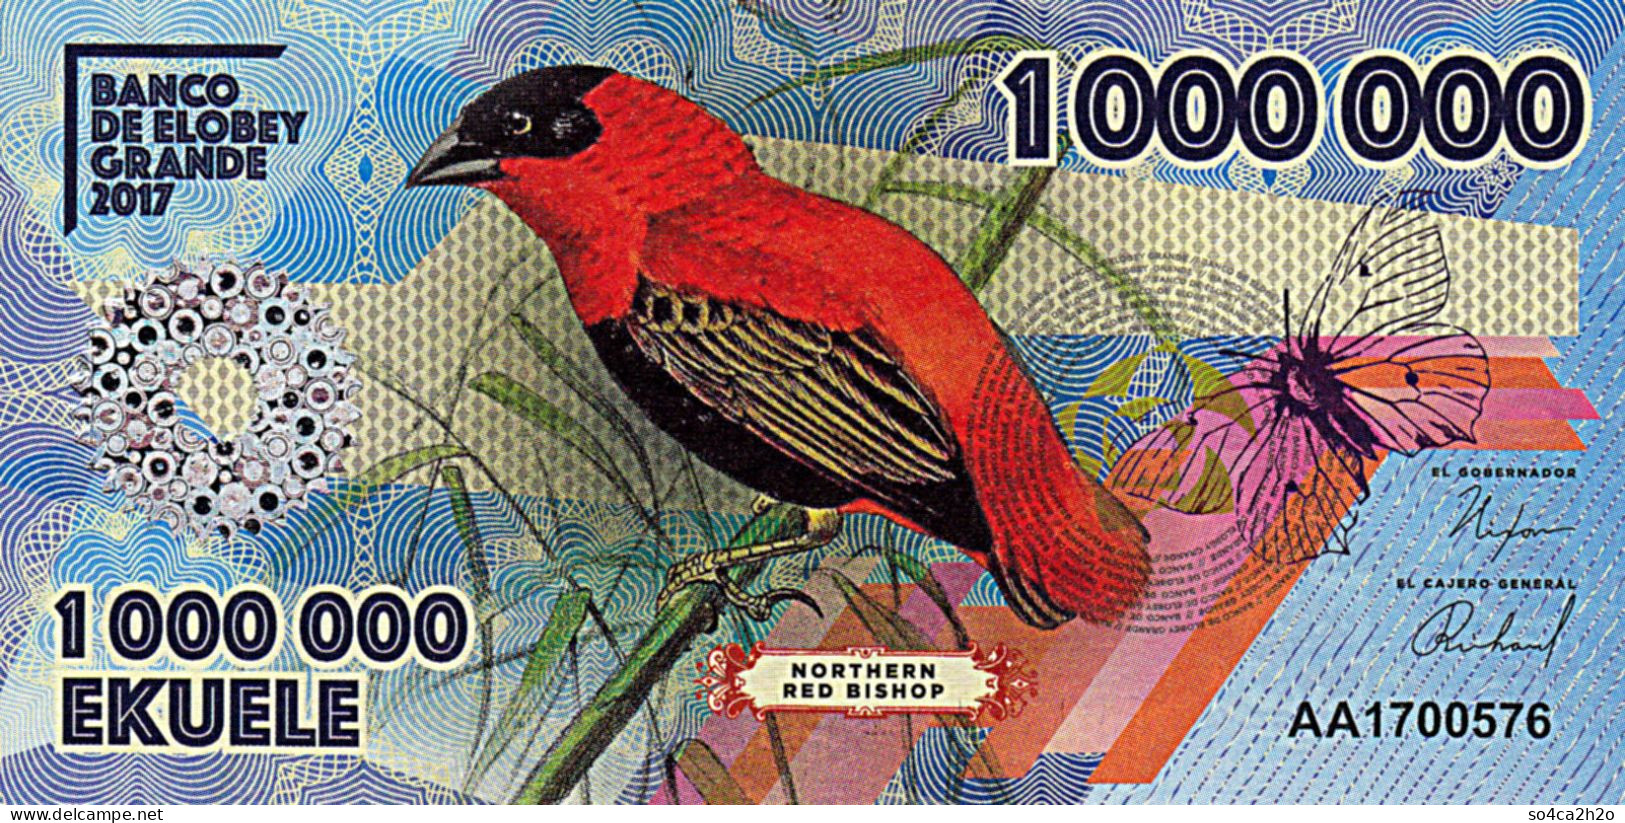 Banco De Elobey Grande 1 00 000 EKUELE 2017 L'Evêque Rouge Du Nord UNC - Guinée Equatoriale